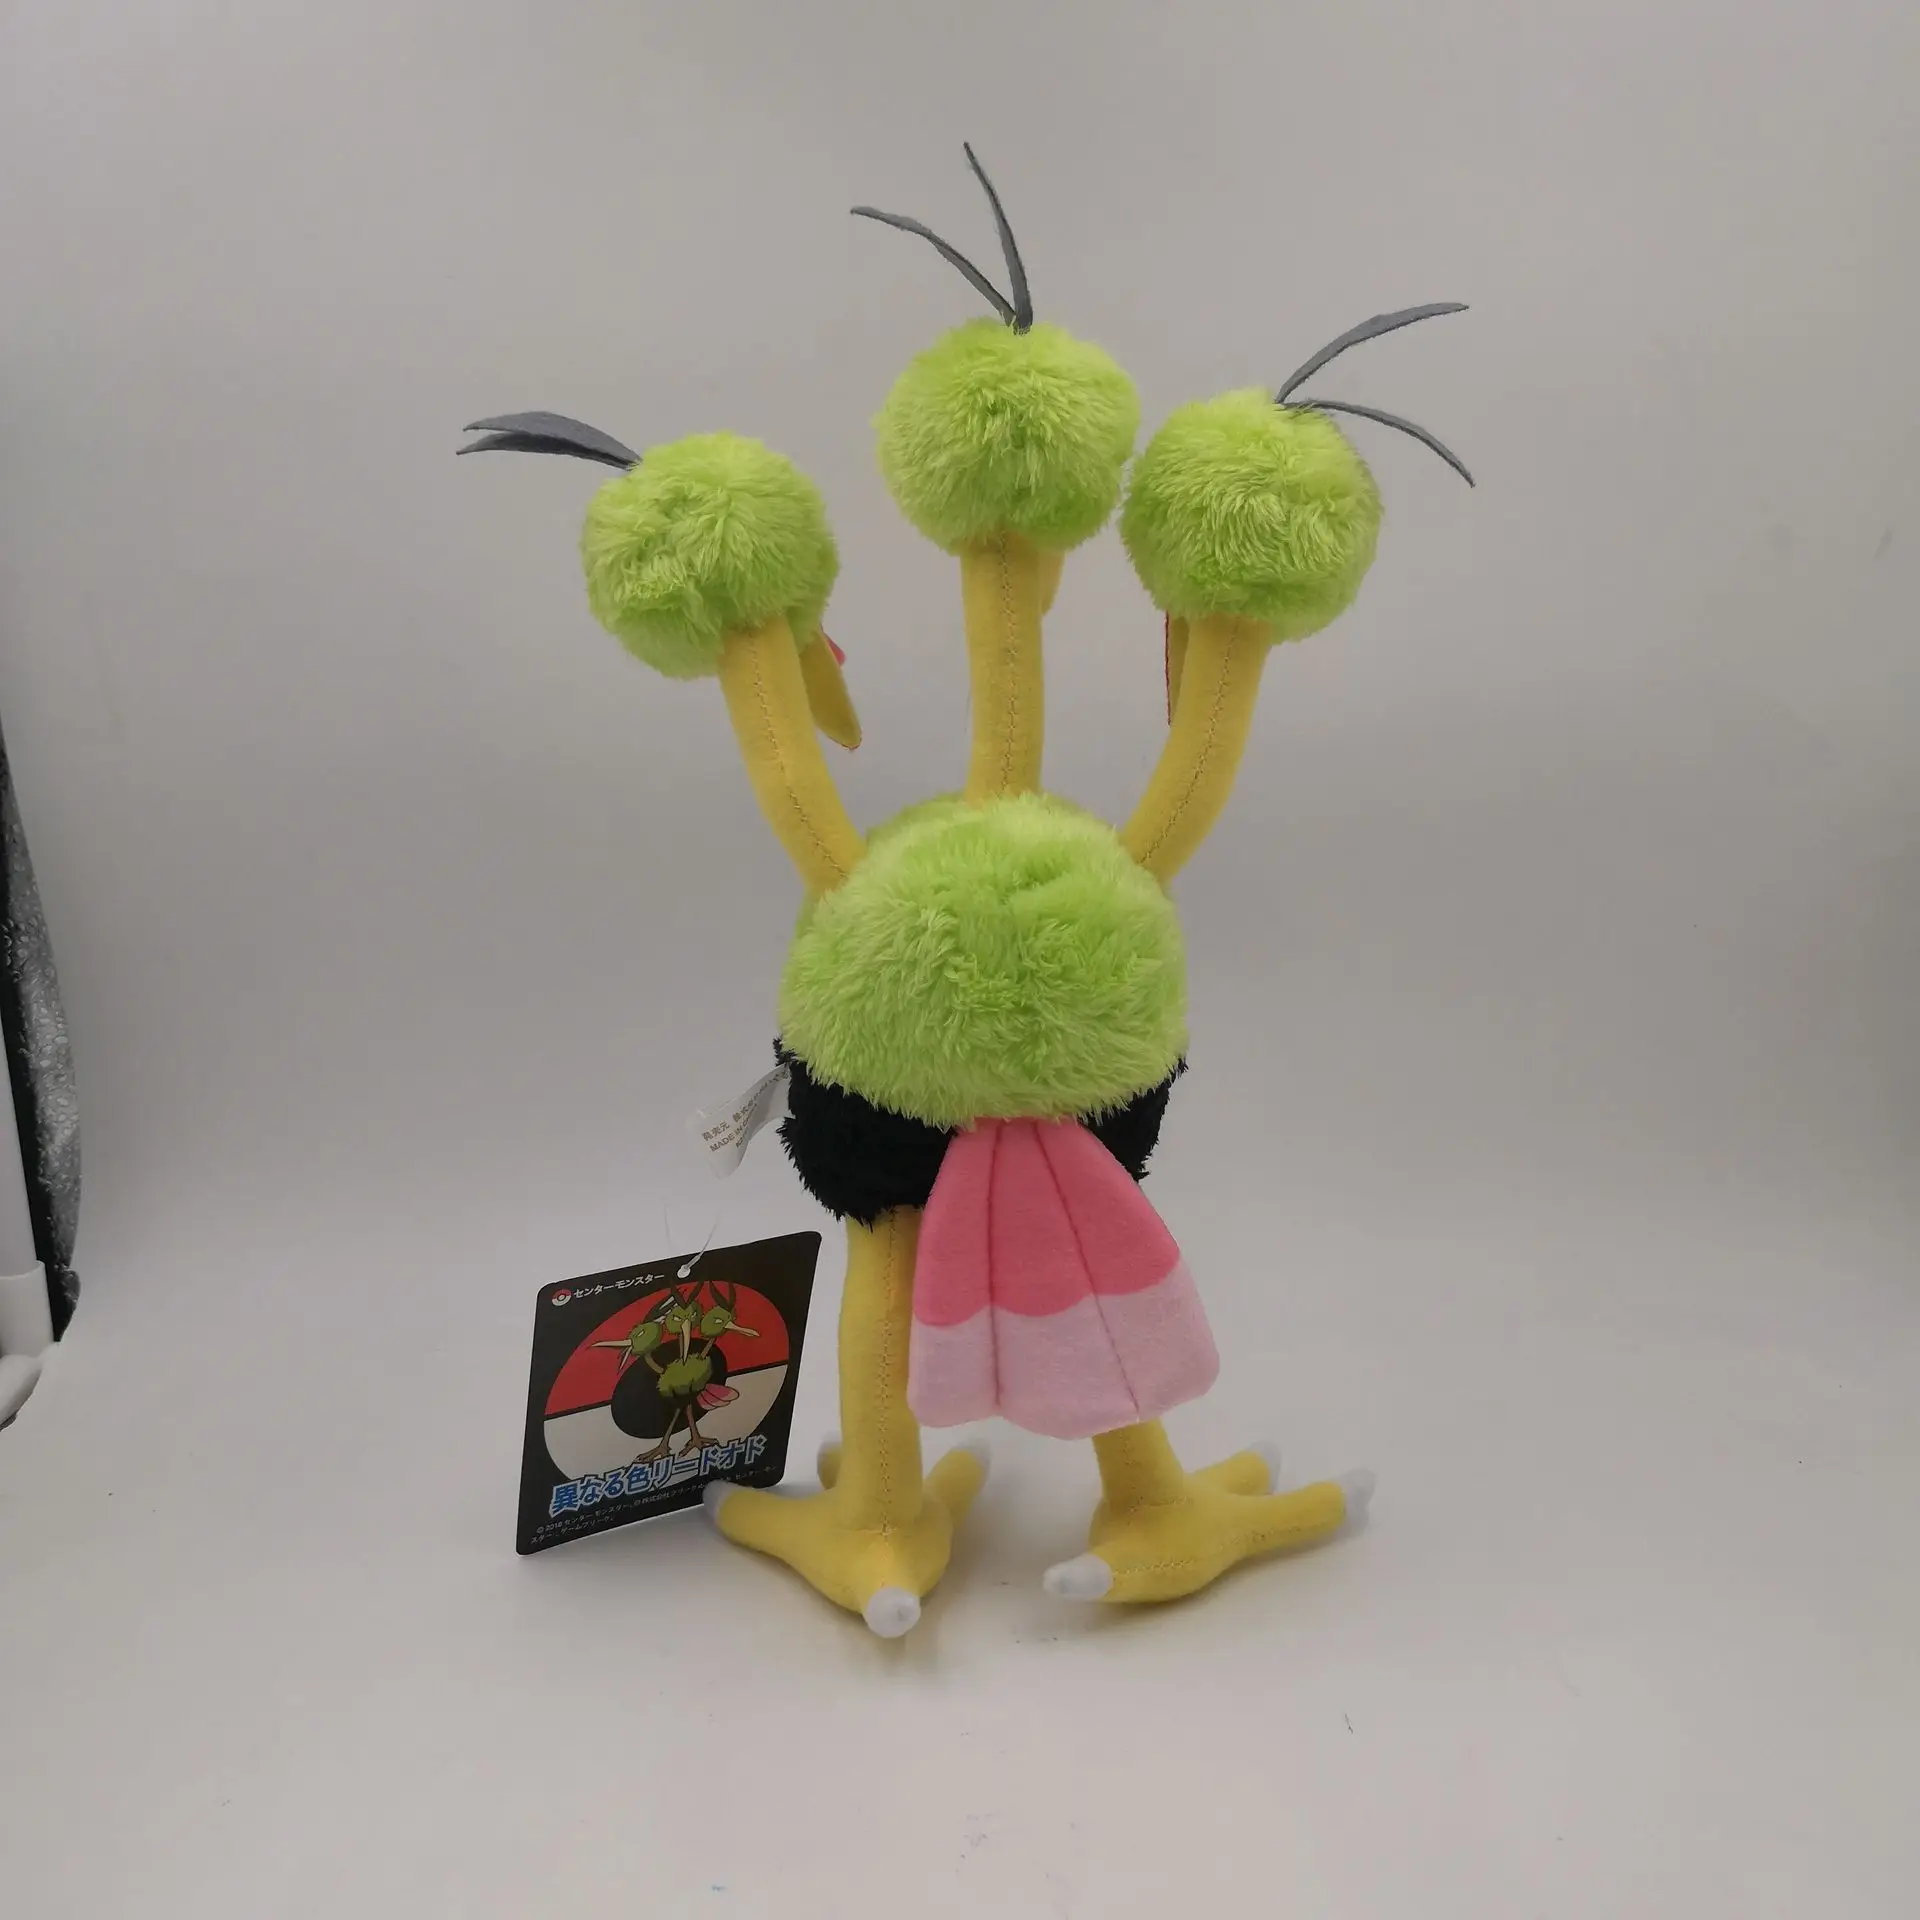 Аниме игры Пикачу серии новые 30 см Dodrio плюшевые игрушки мягкие игрушки подарок на день рождения для детей